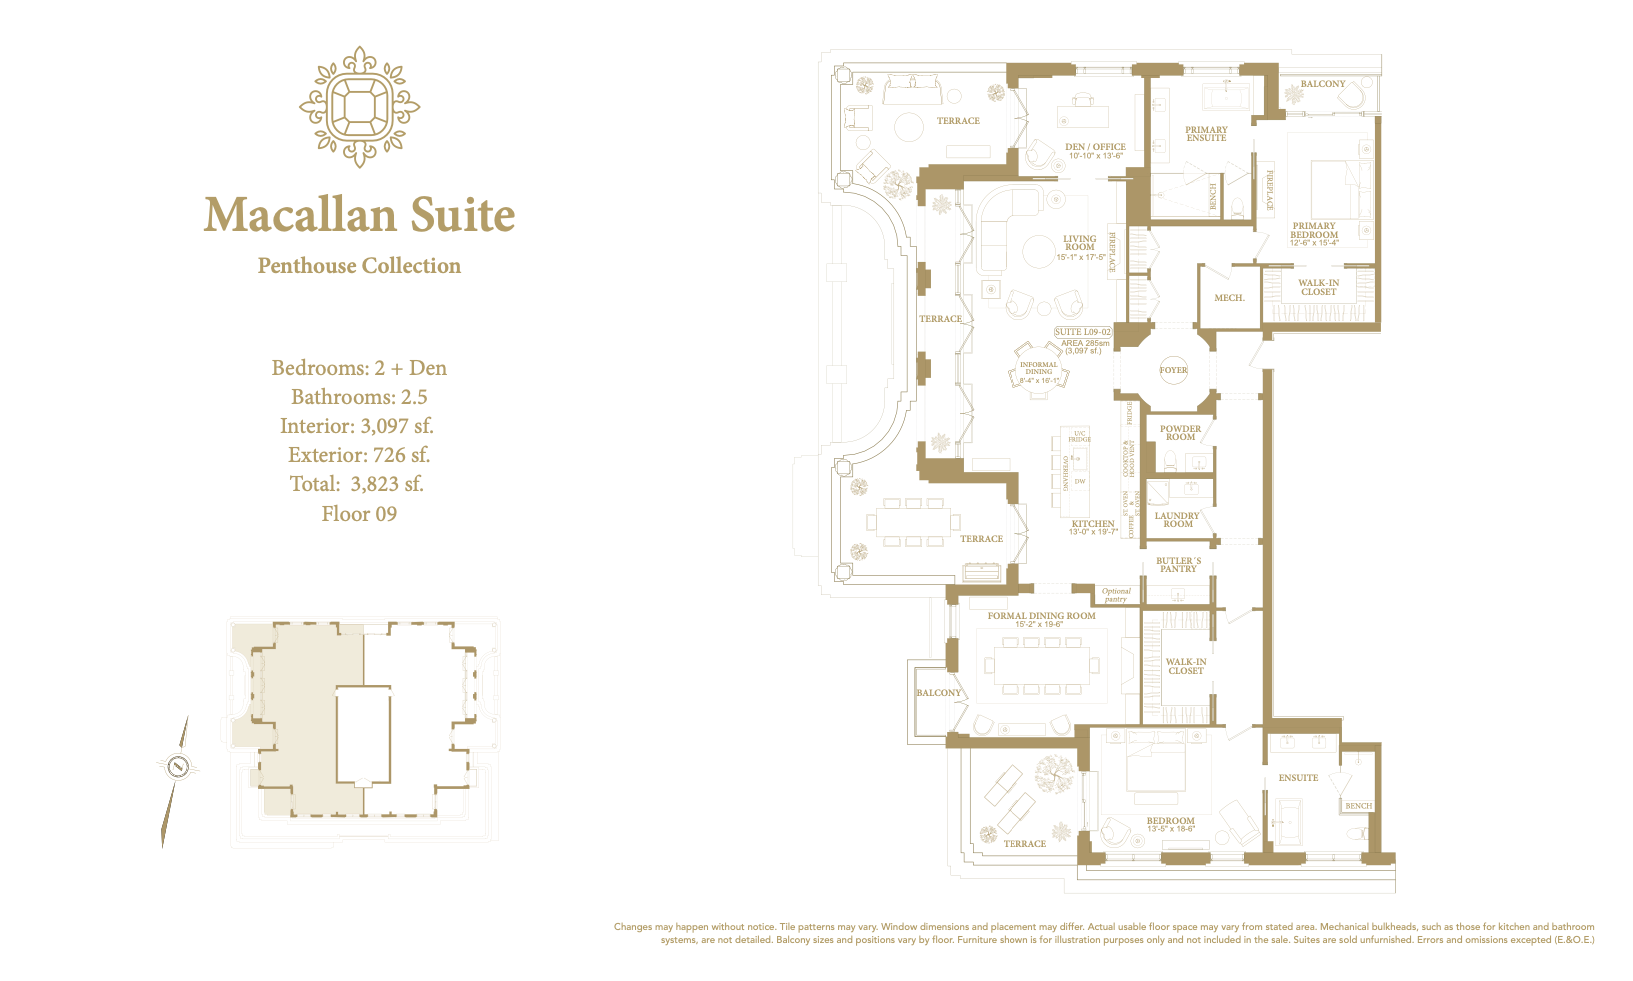 Macallan Suite floor plan